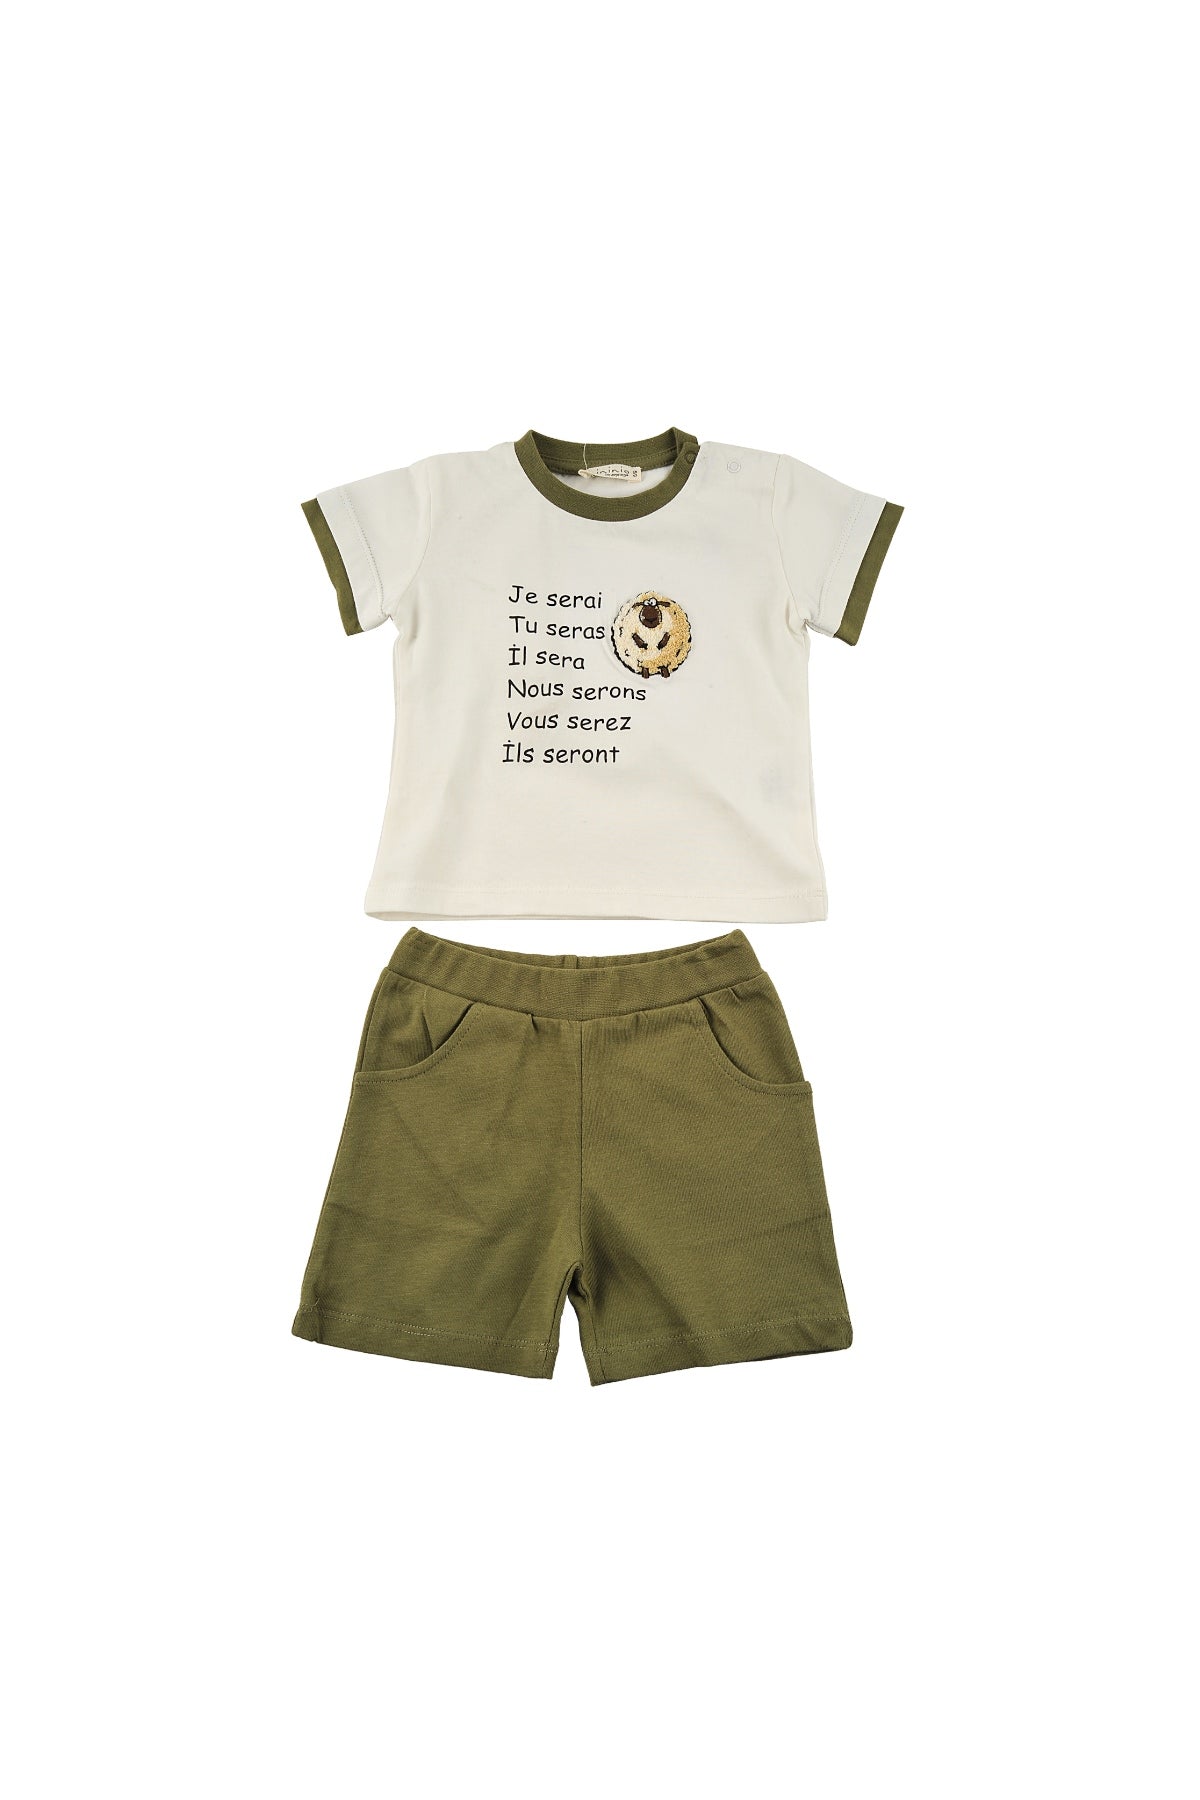 Erkek Bebek Je Serai Koyun Nakışlı T-Shirt ve Cepli Şort Takım (6ay-4yaş)-2